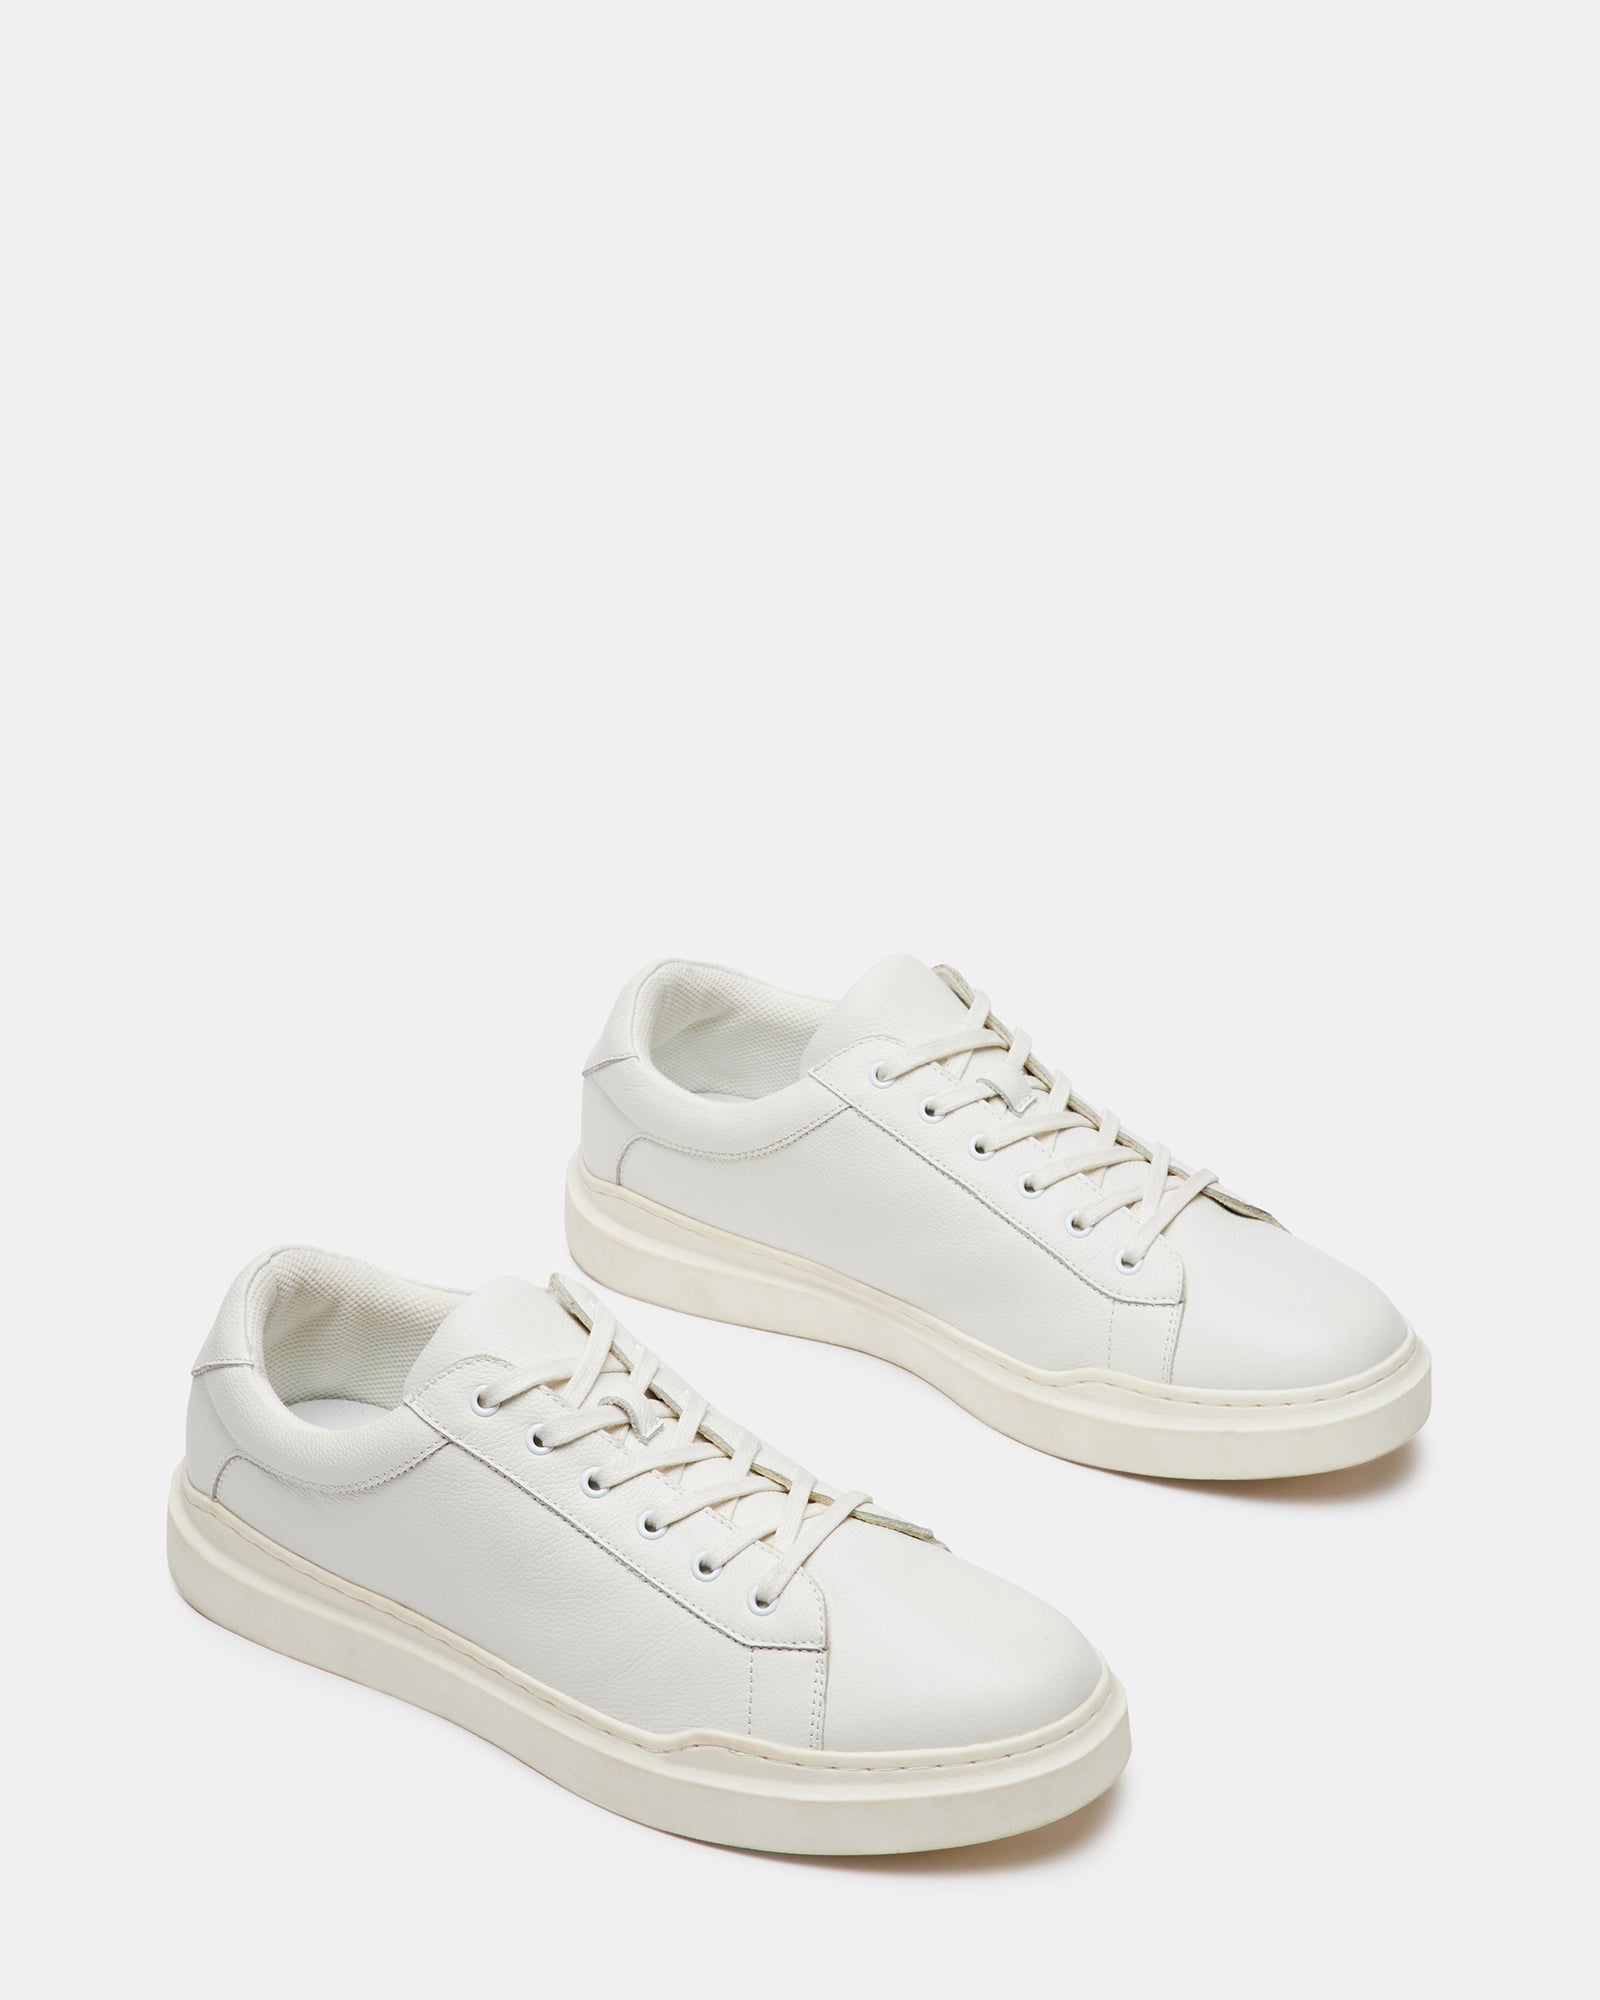 TILTON White Leather Lace-Up Sneaker | Men's Sneakers – Steve Madden